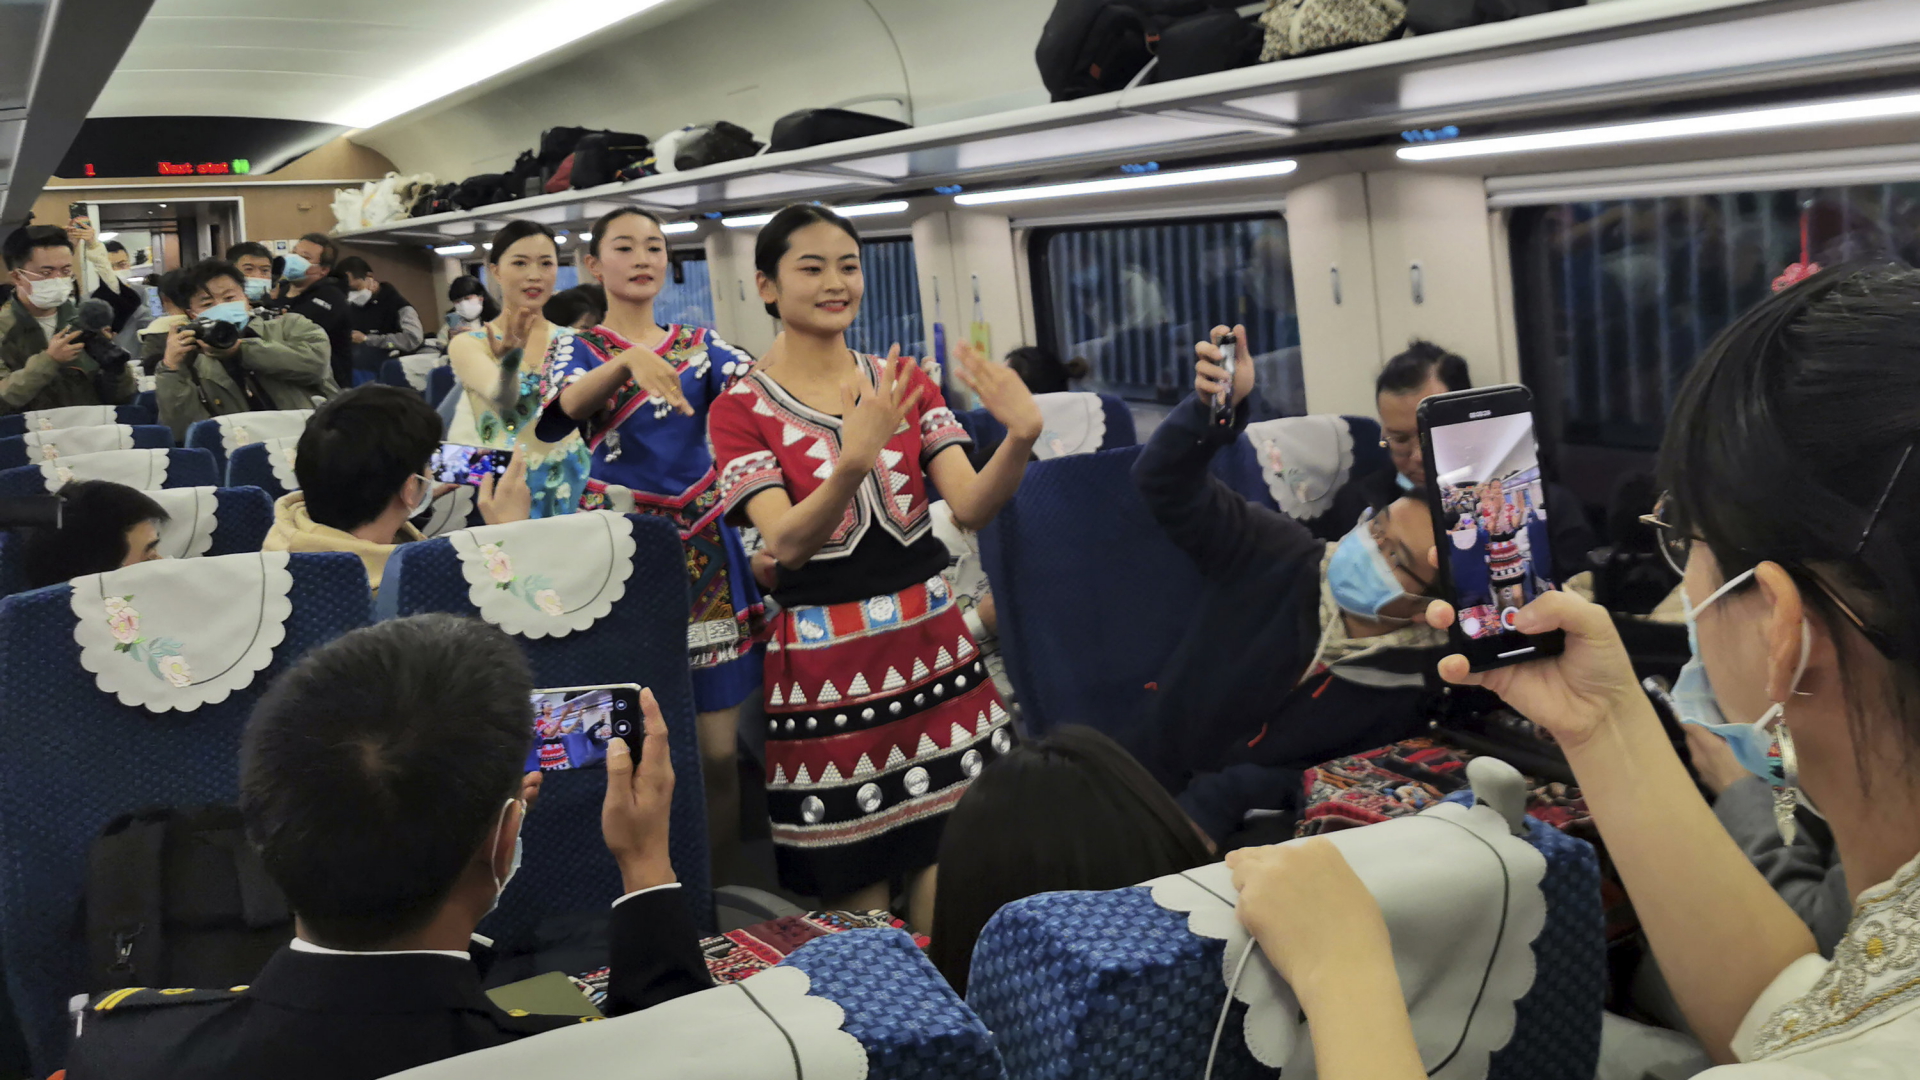 Fahrgäste zücken ihre Handys, als eine Tänzerinnengruppe in Tracht durch den Mittelgang geht. | AP